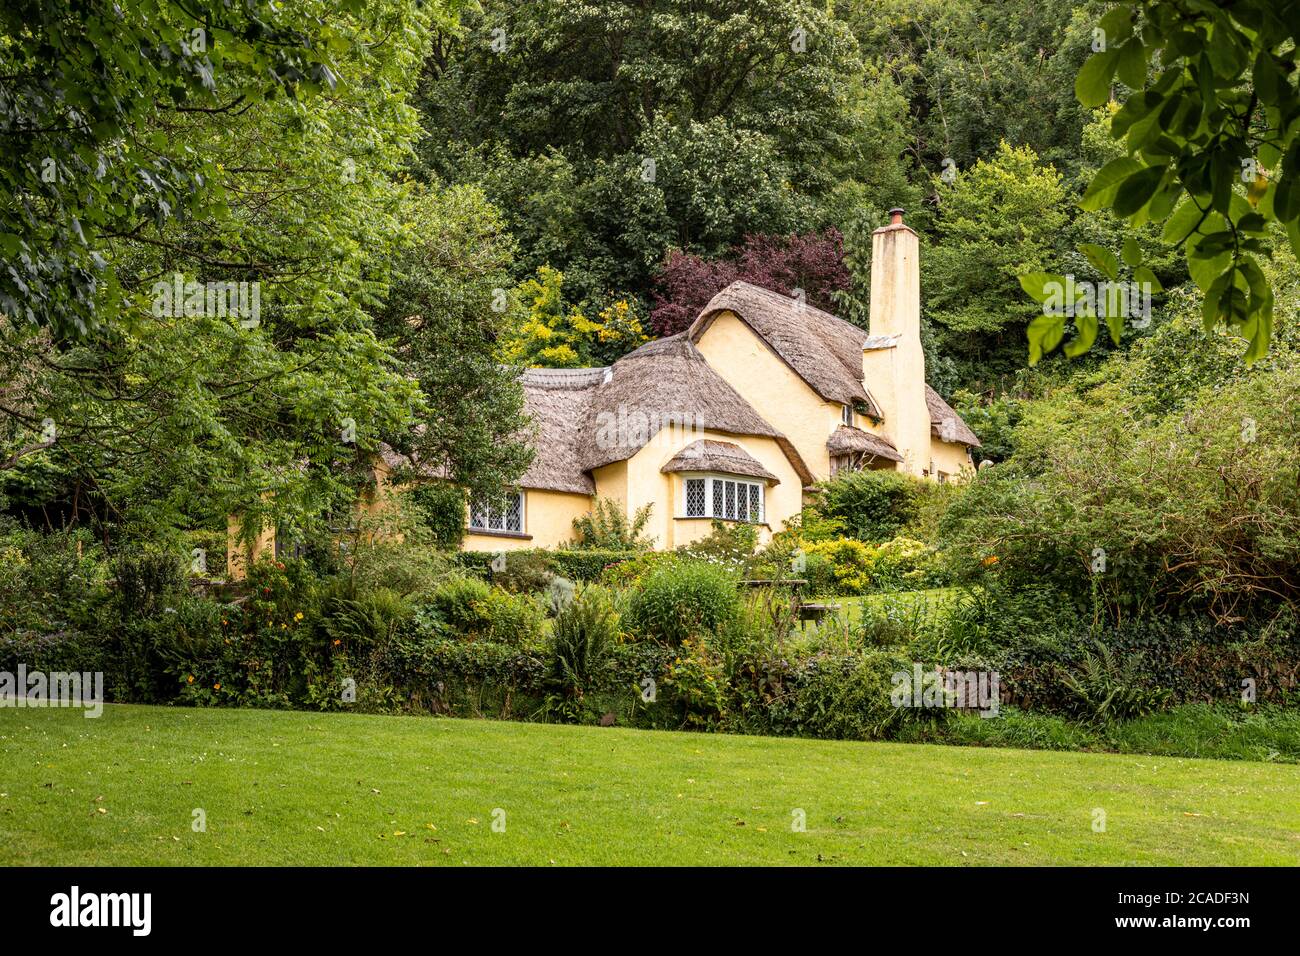 Parc national d'Exmoor - UN cottage typique de chaume dans le village de Selworthy, Somerset Royaume-Uni Banque D'Images